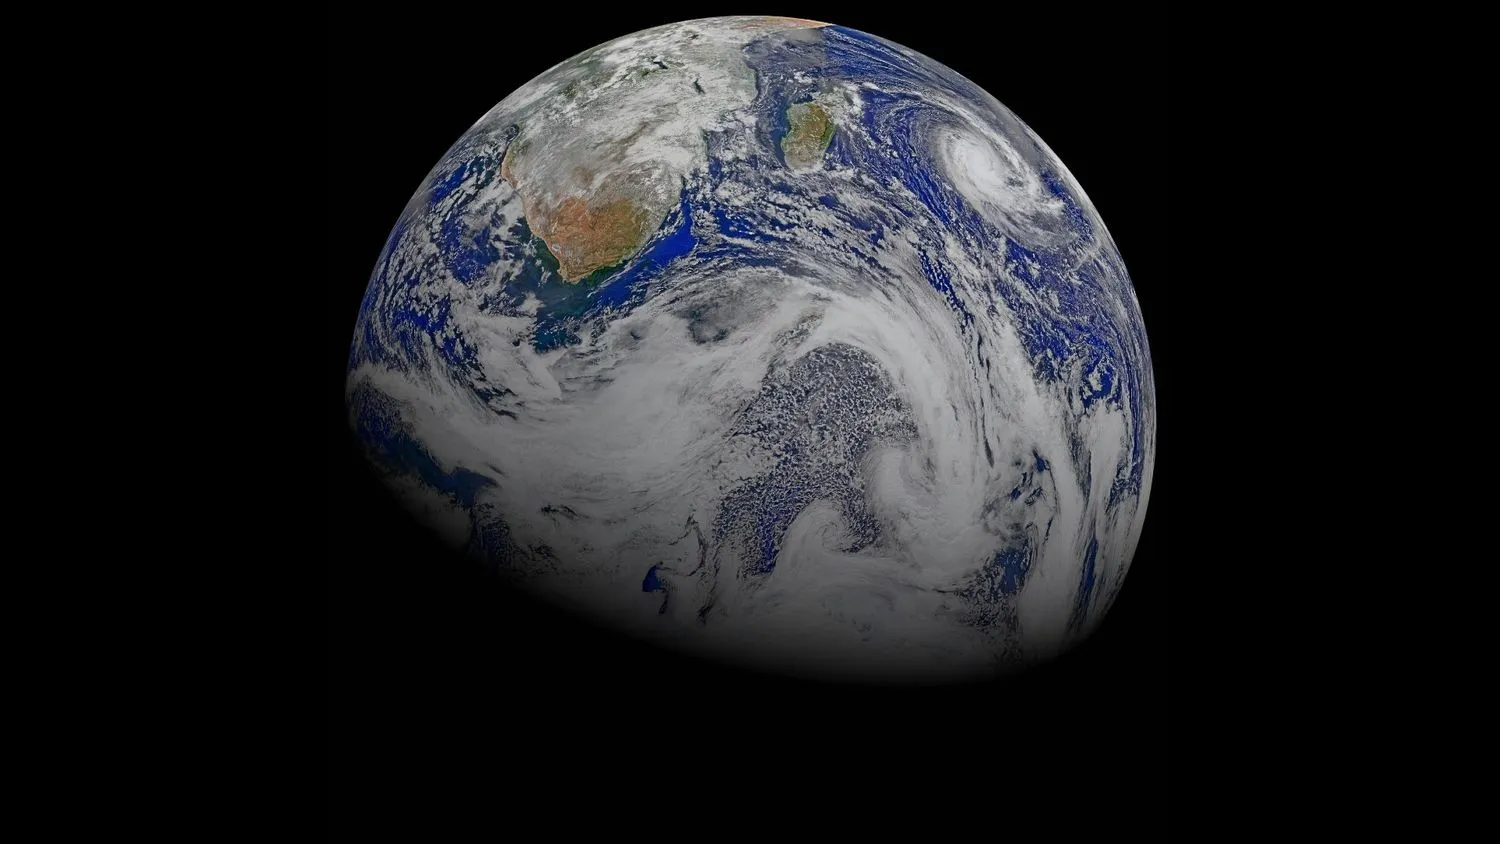 Erde aus dem Weltraum gesehen